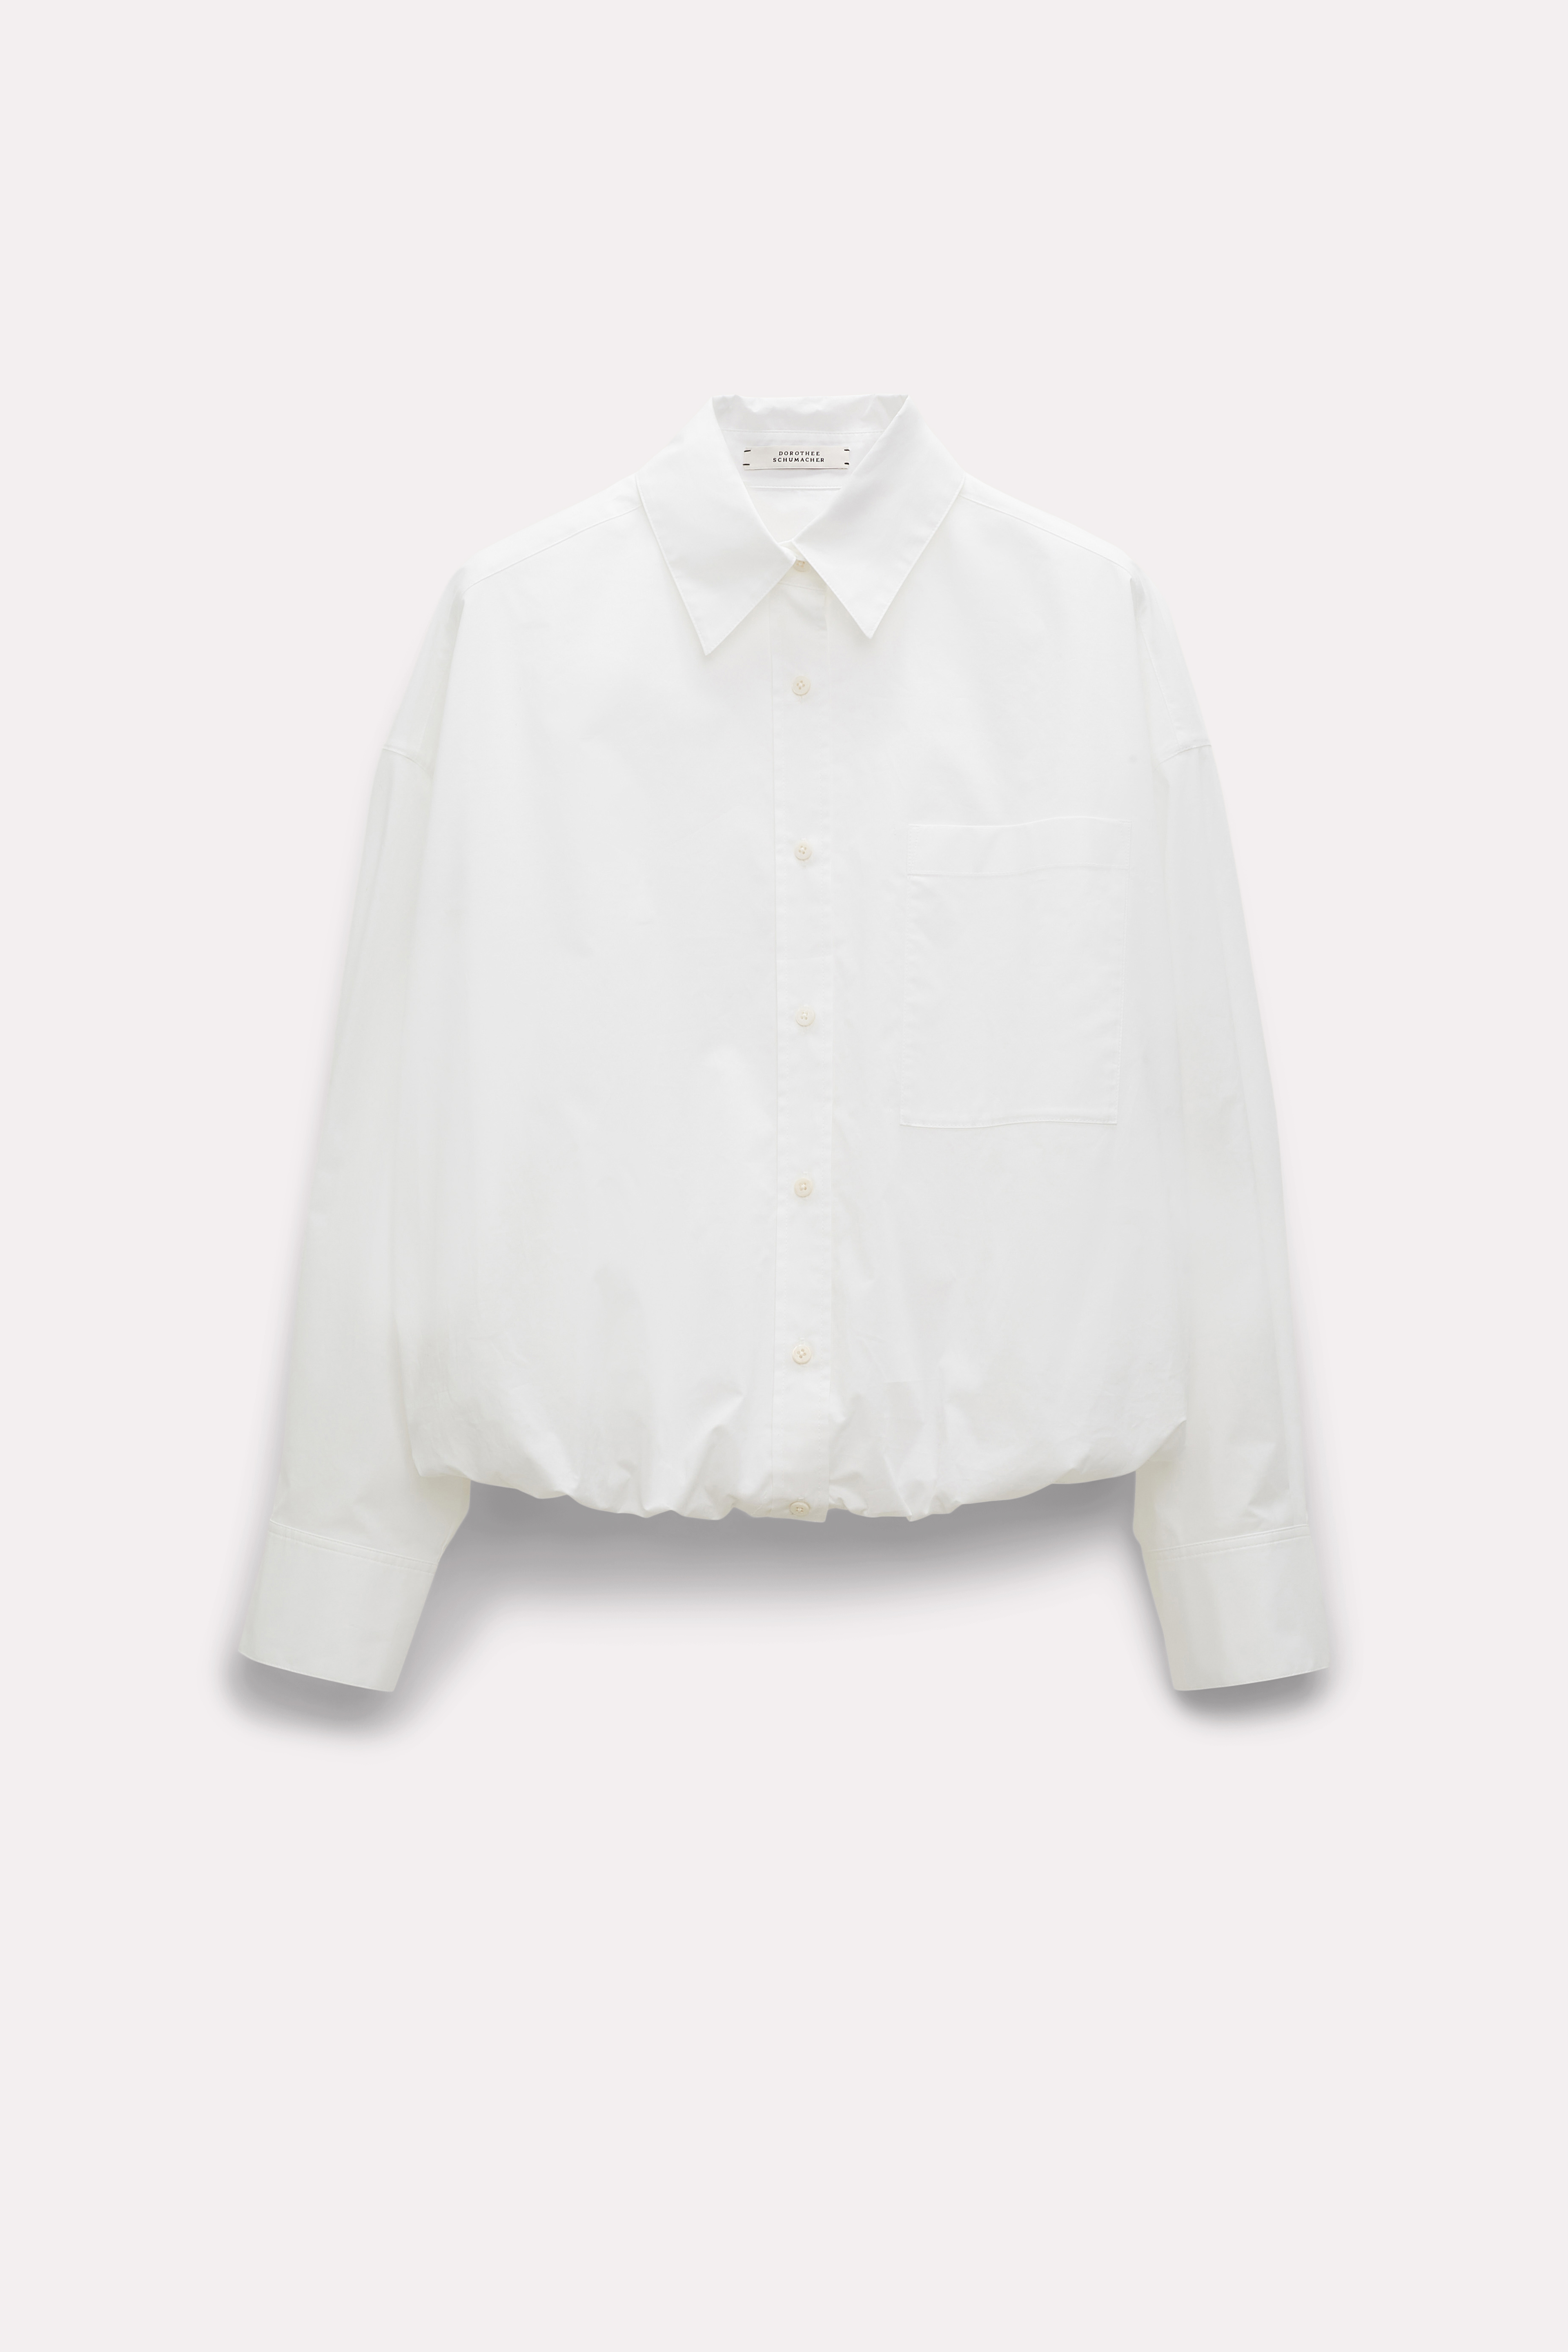 Dorothee Schumacher Cotton Shirt With Balloon Hem In White